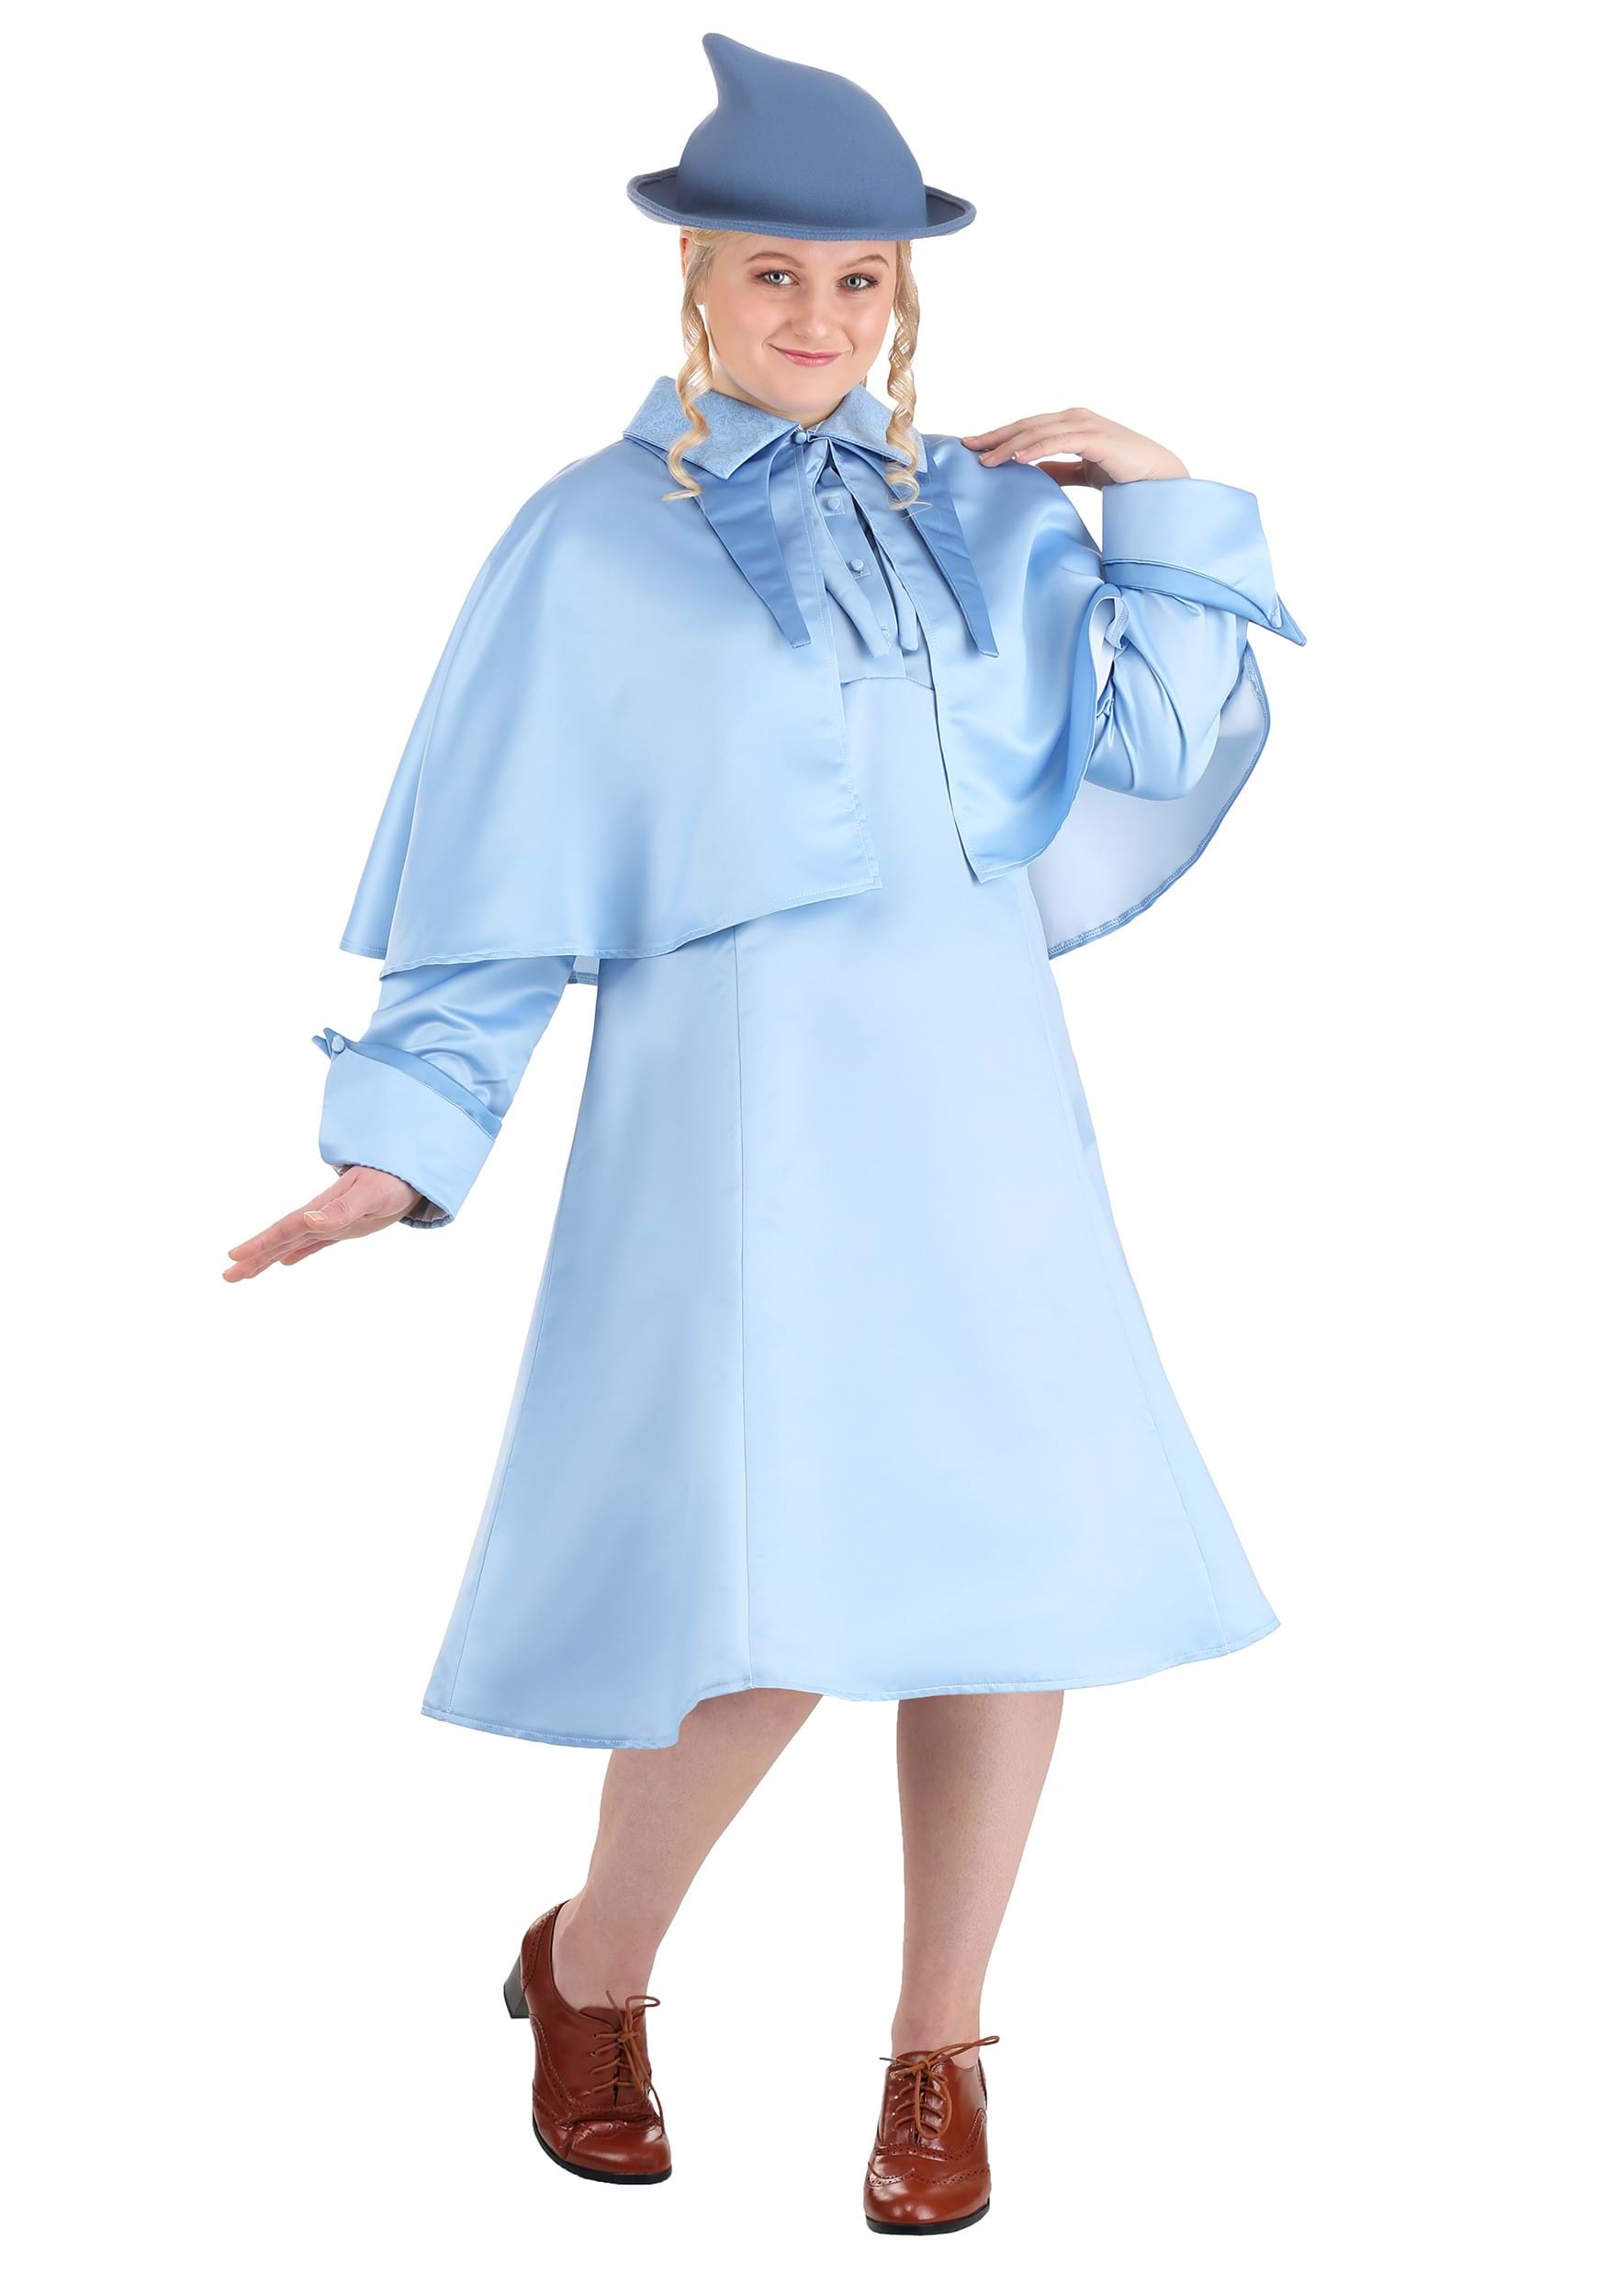 Photos - Fancy Dress FLEUR FUN Costumes Plus Size  Delacour Women's Costume Blue FUN1463PL 